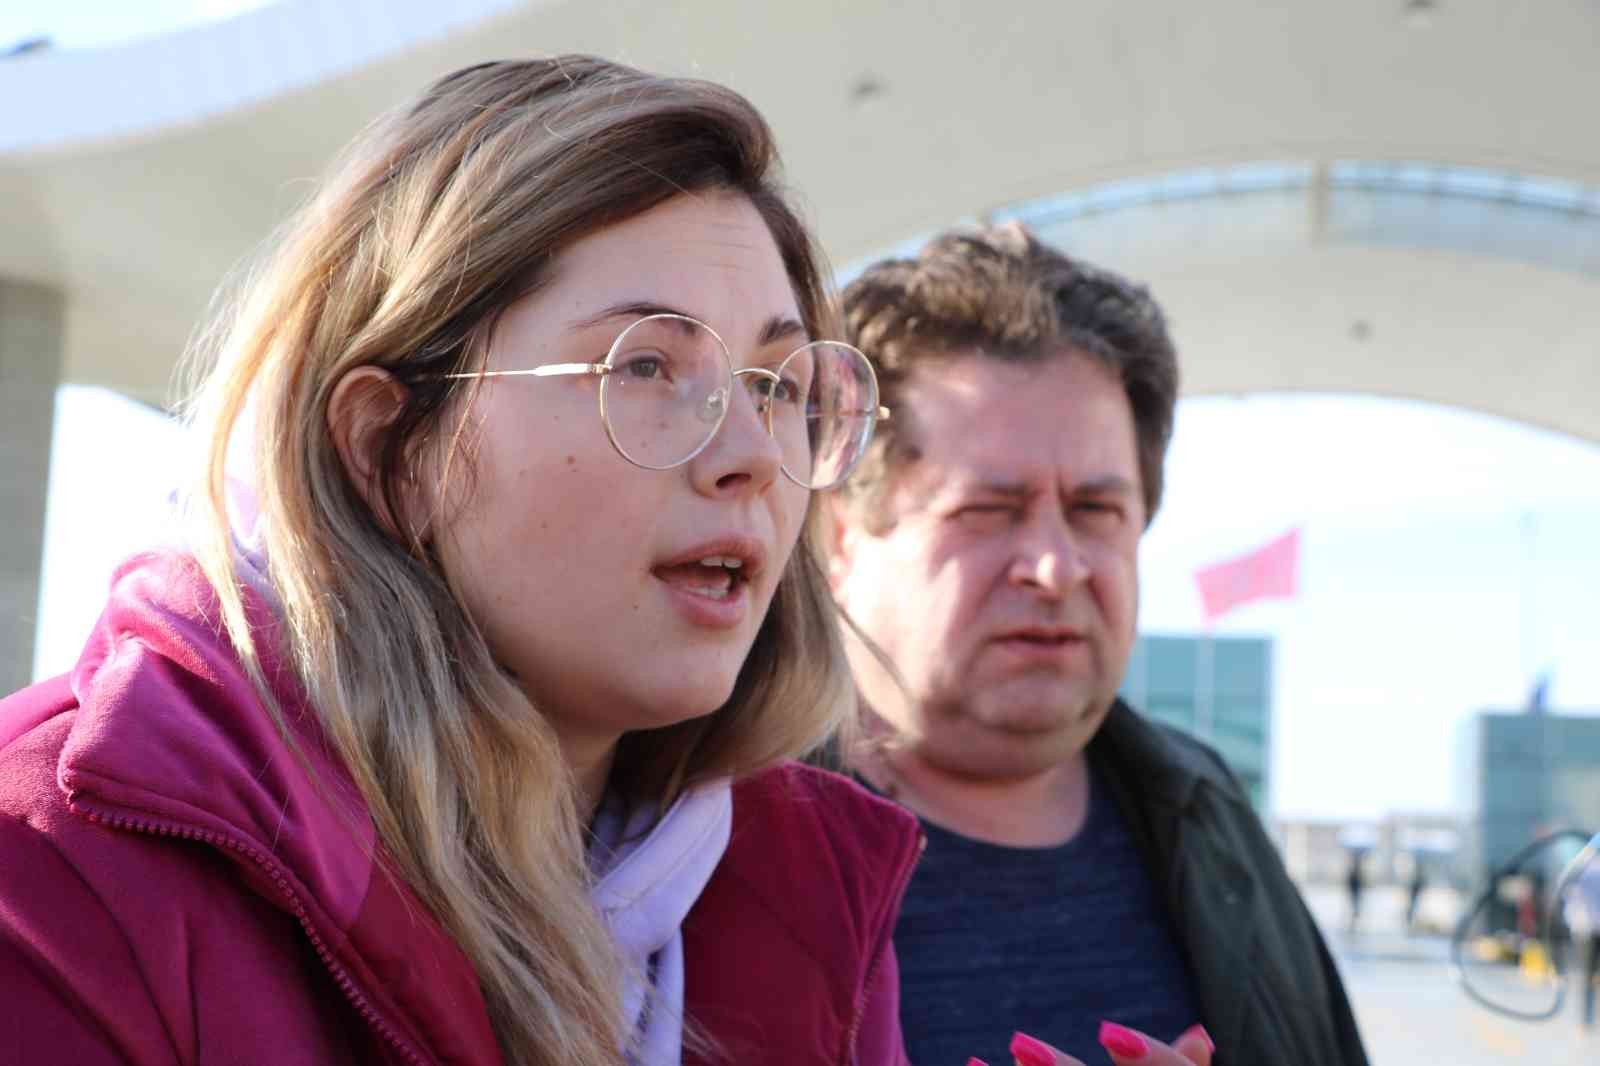  Rusya’nın Ukrayna’ya saldırısı nedeniyle ülkesini terk edip Türkiye’ye gelen Ukraynalı genç kız gözyaşları içerisinde yaşanan dramı anlattı ...